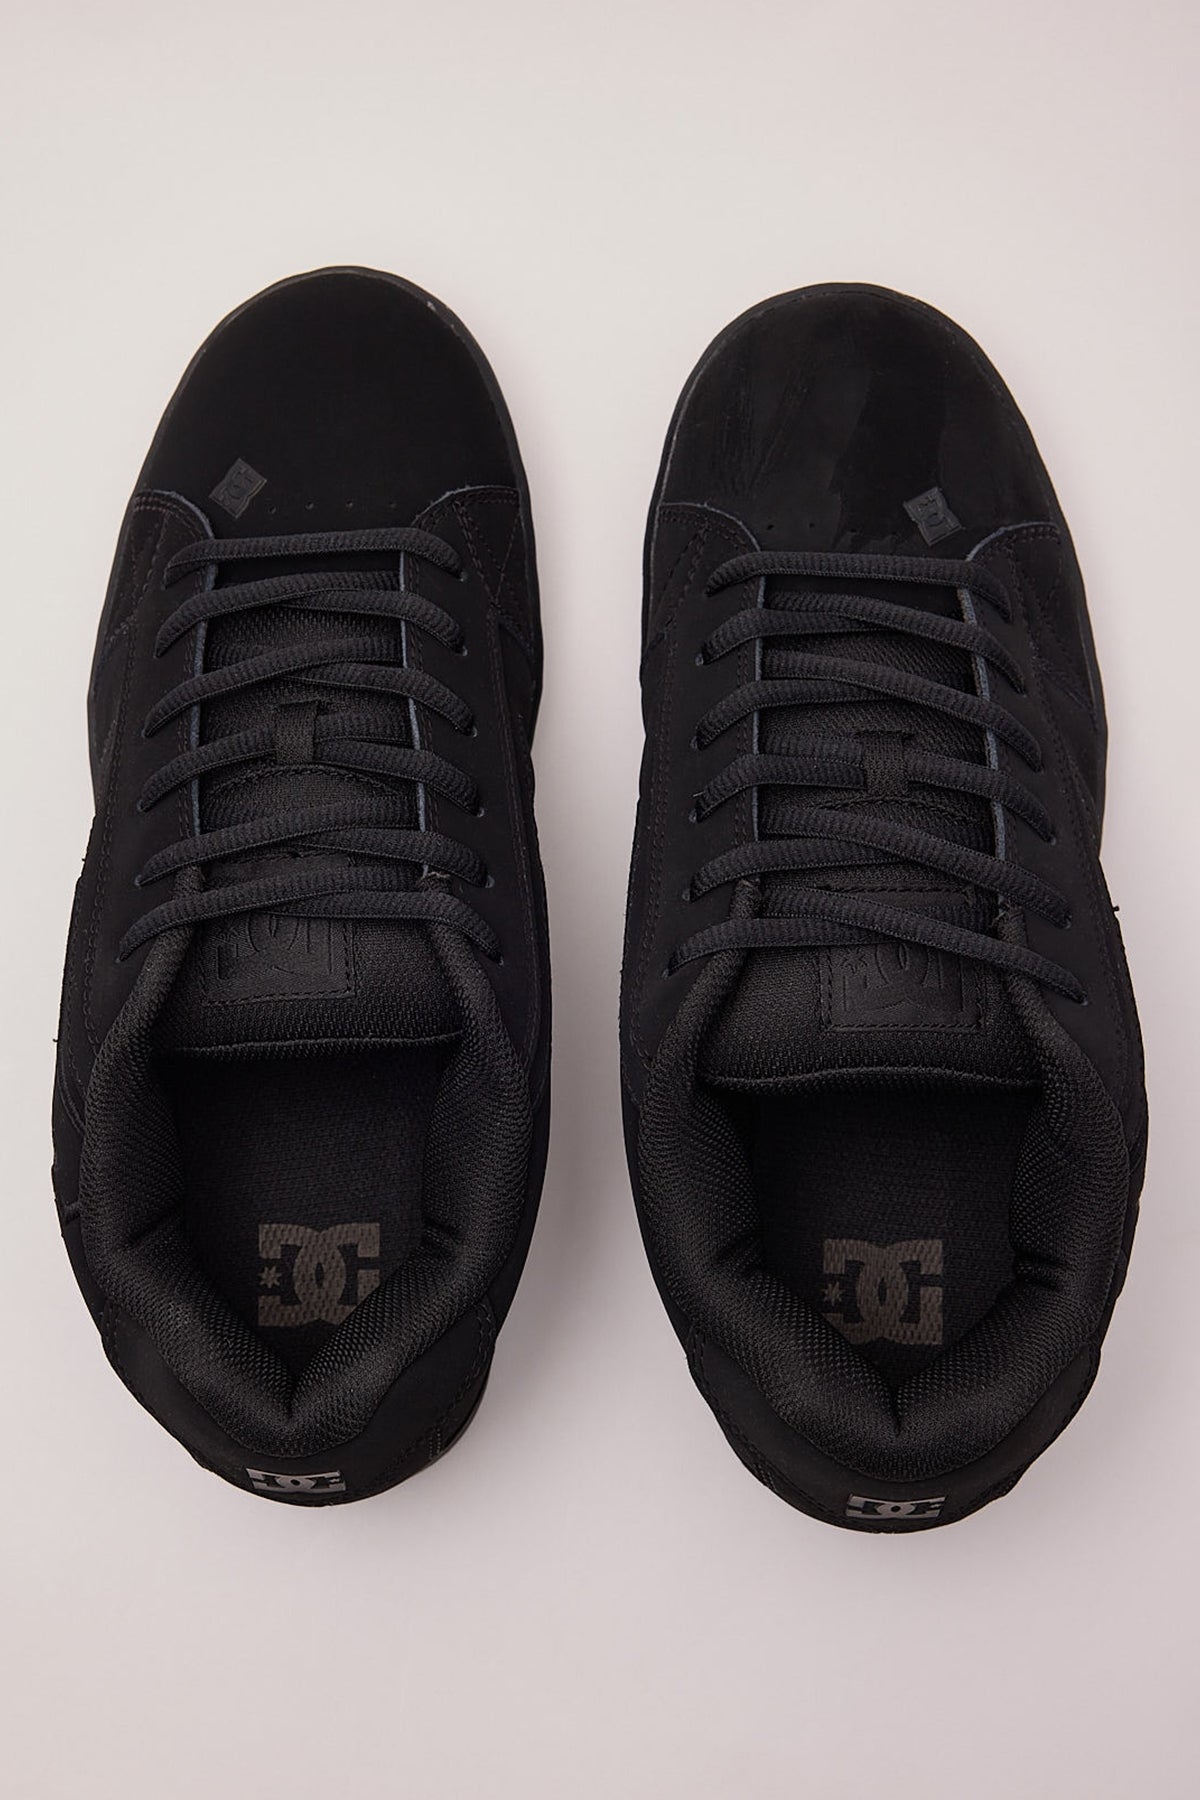 Dc Shoes Net Black